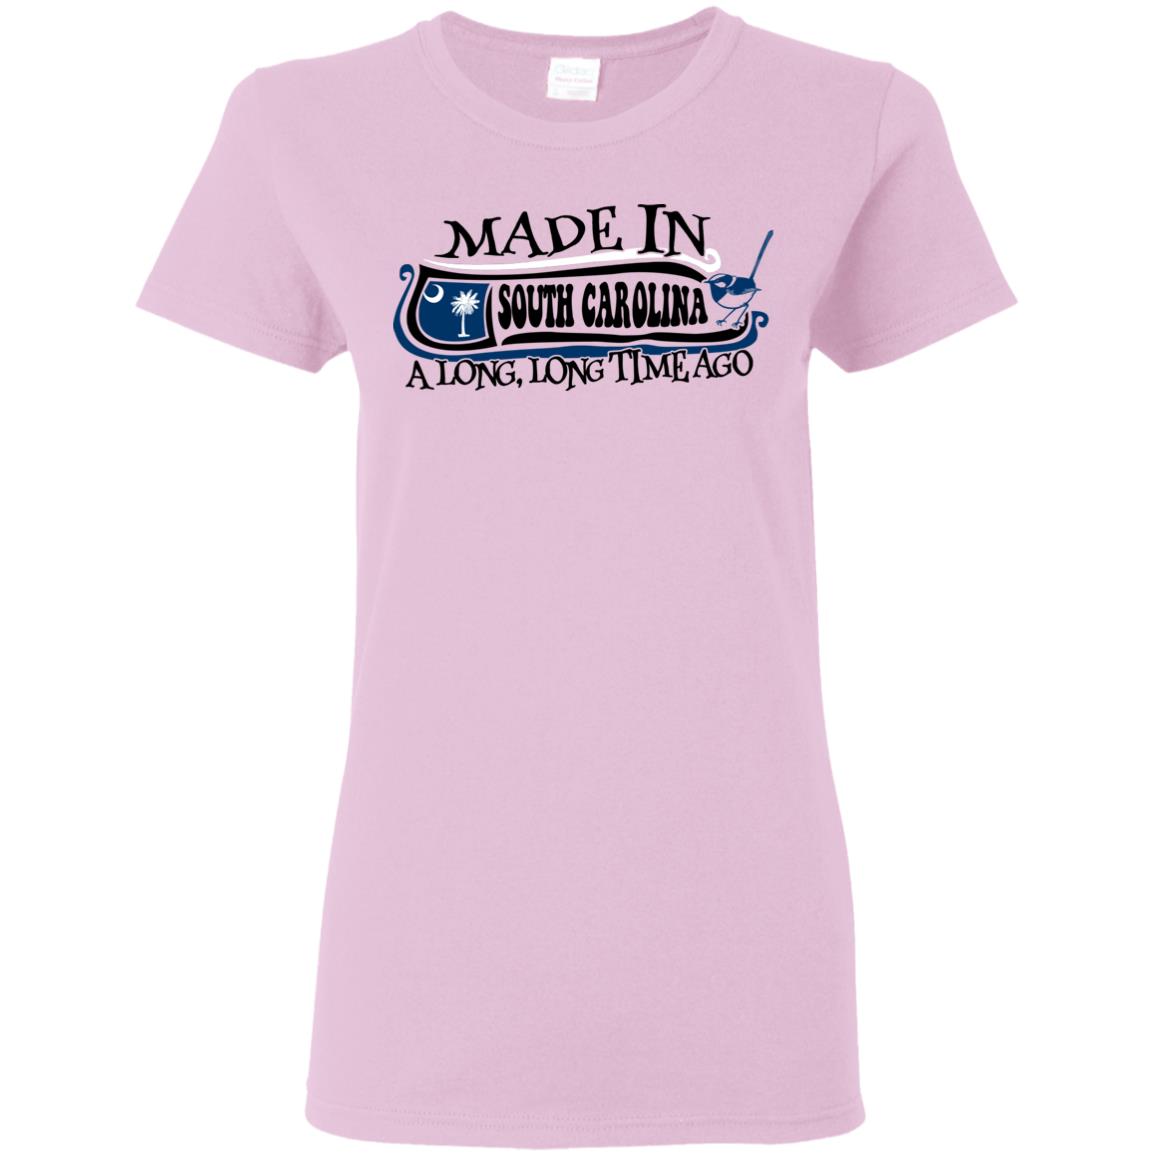 Made In South Carolina A Long Long Time Ago T Shirt - T-shirt Teezalo